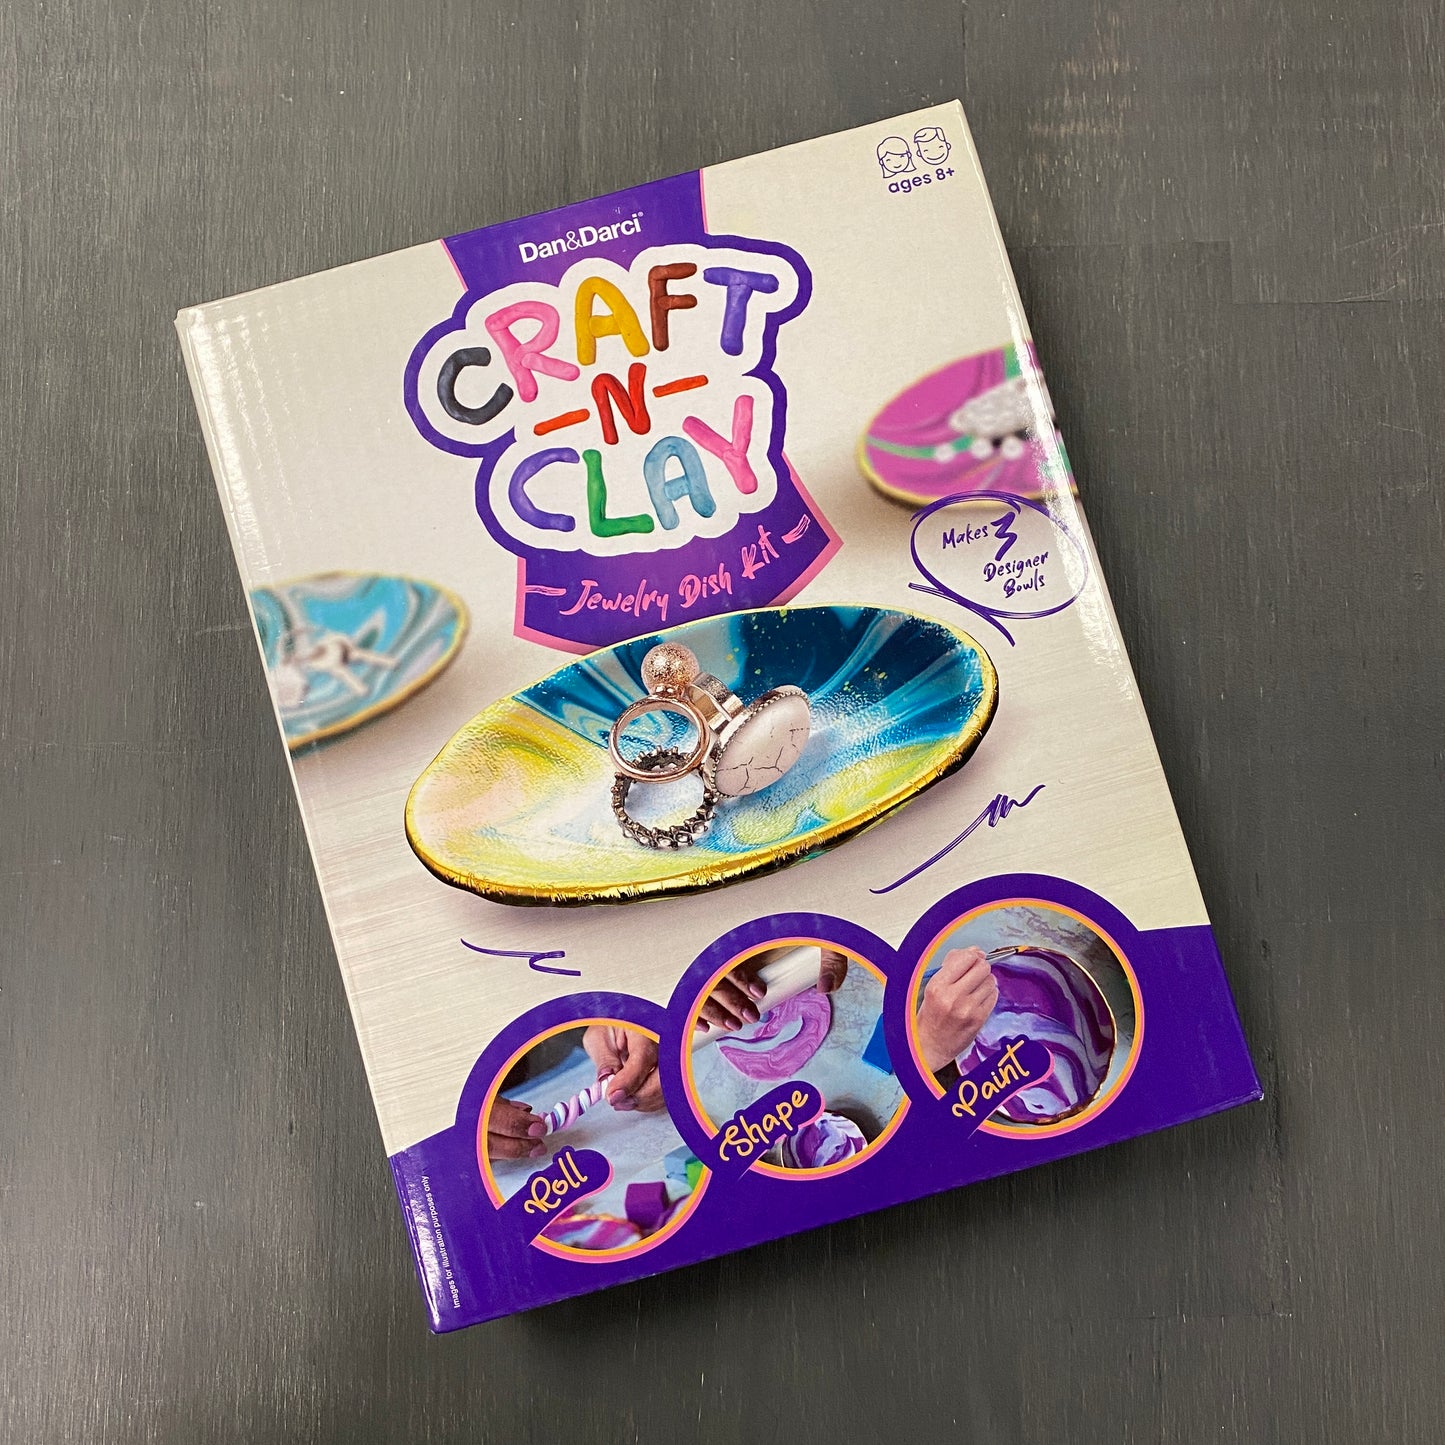 Dan&Darci - Craft n' Clay - Jewelry Dish Making Kit